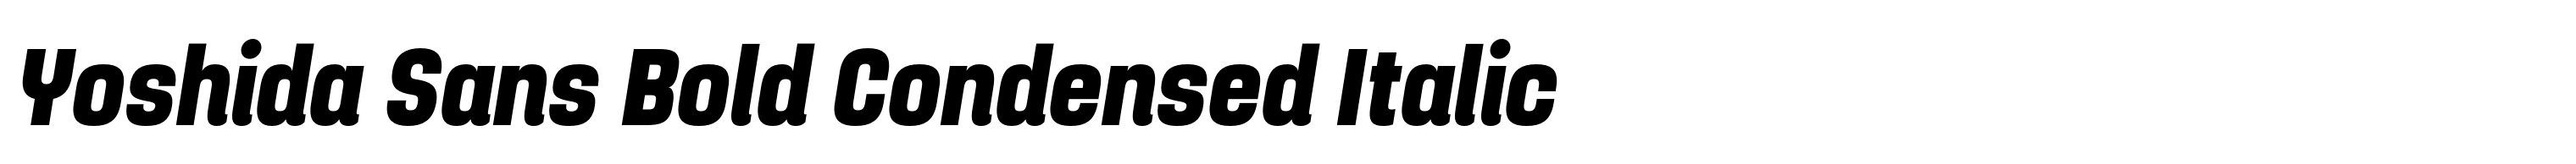 Yoshida Sans Bold Condensed Italic